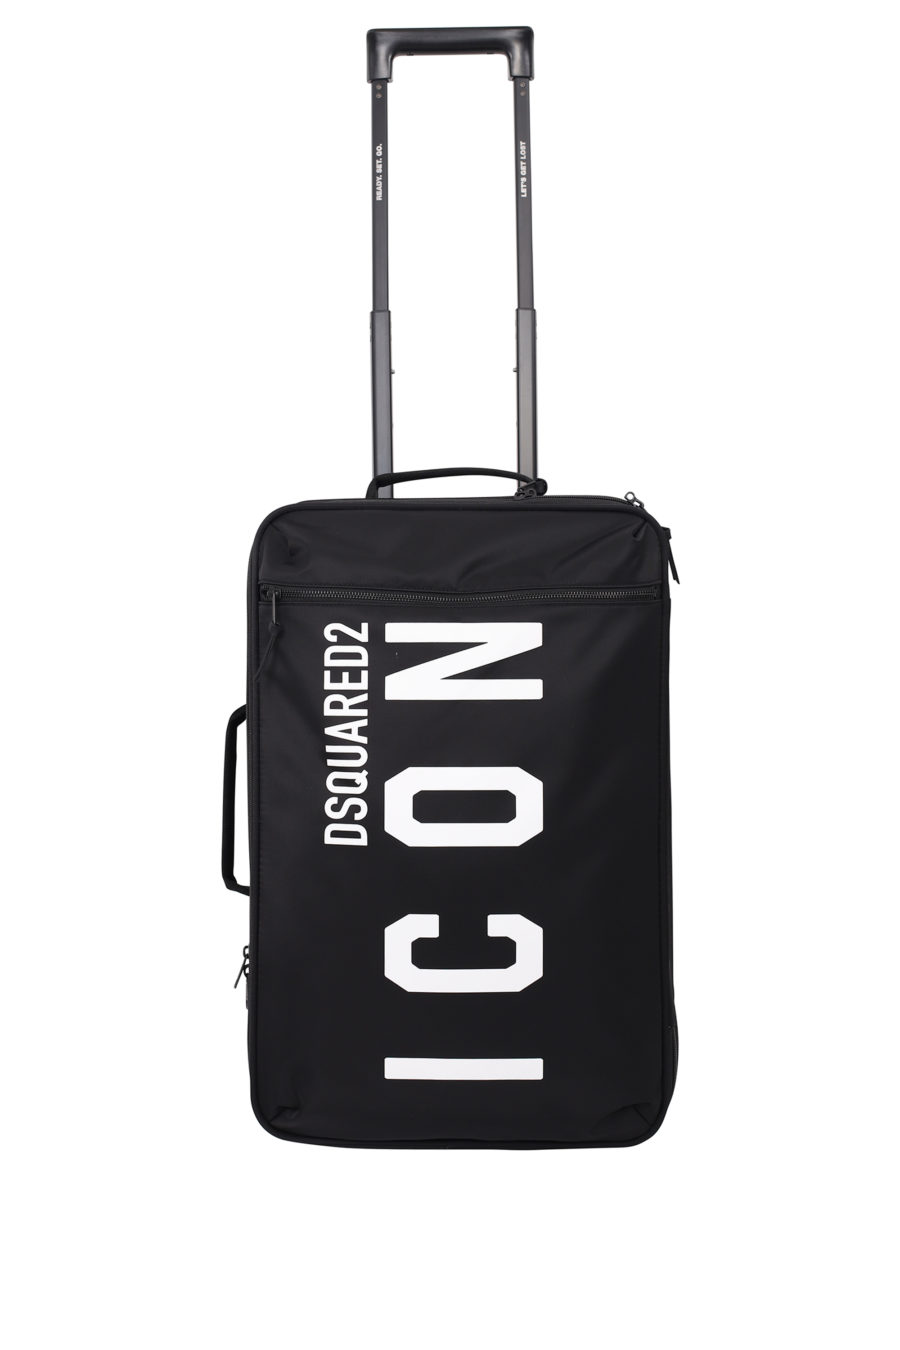 Black wheeled suitcase with "icon" logo - IMG 9699